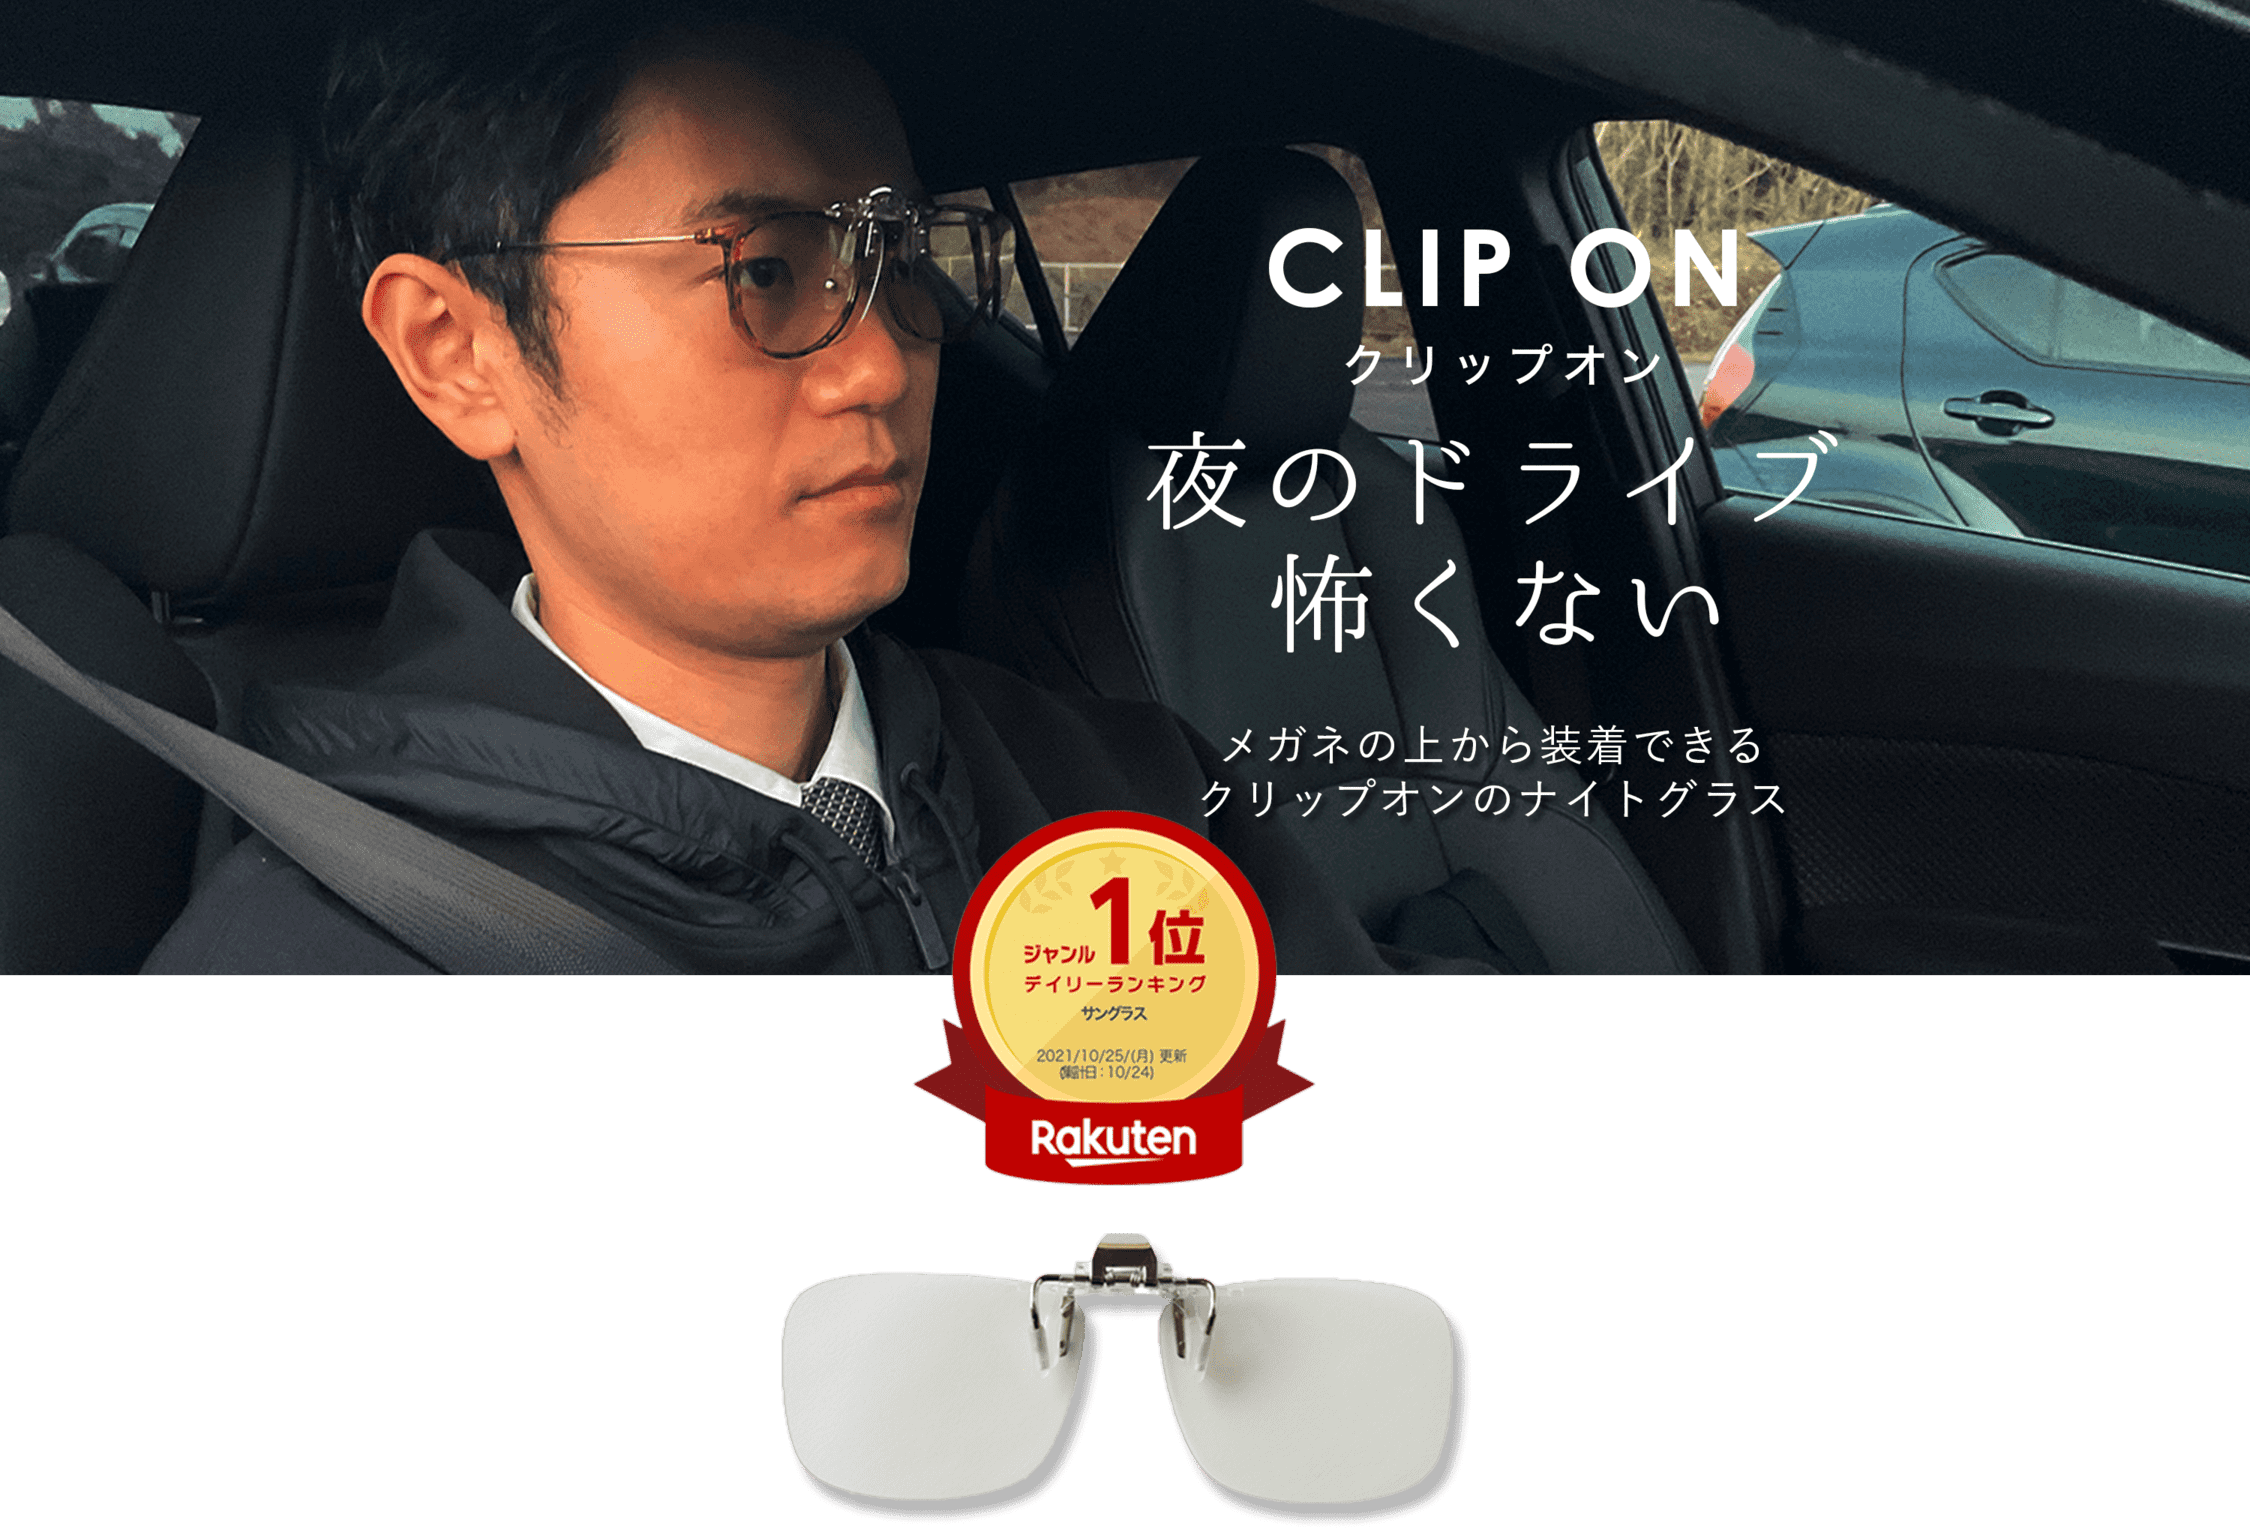 CLIP ON クリップオン 夜のドライブ怖くない メガネの上から装着できるクリップオンのナイトグラス